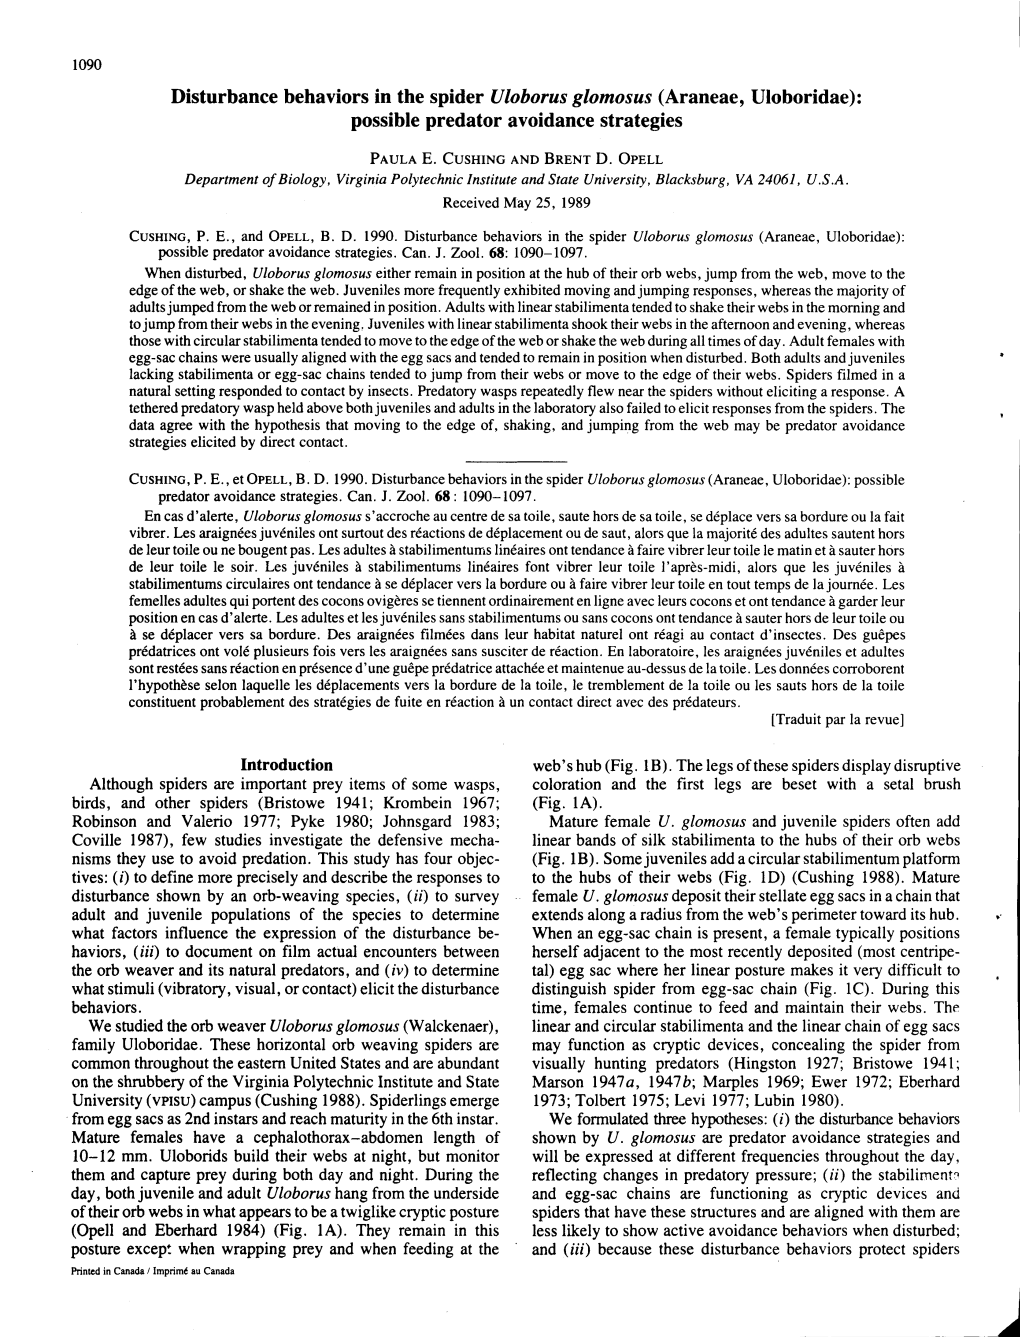 Disturbance Behaviors in the Spider Uloborus Glomosus (Araneae